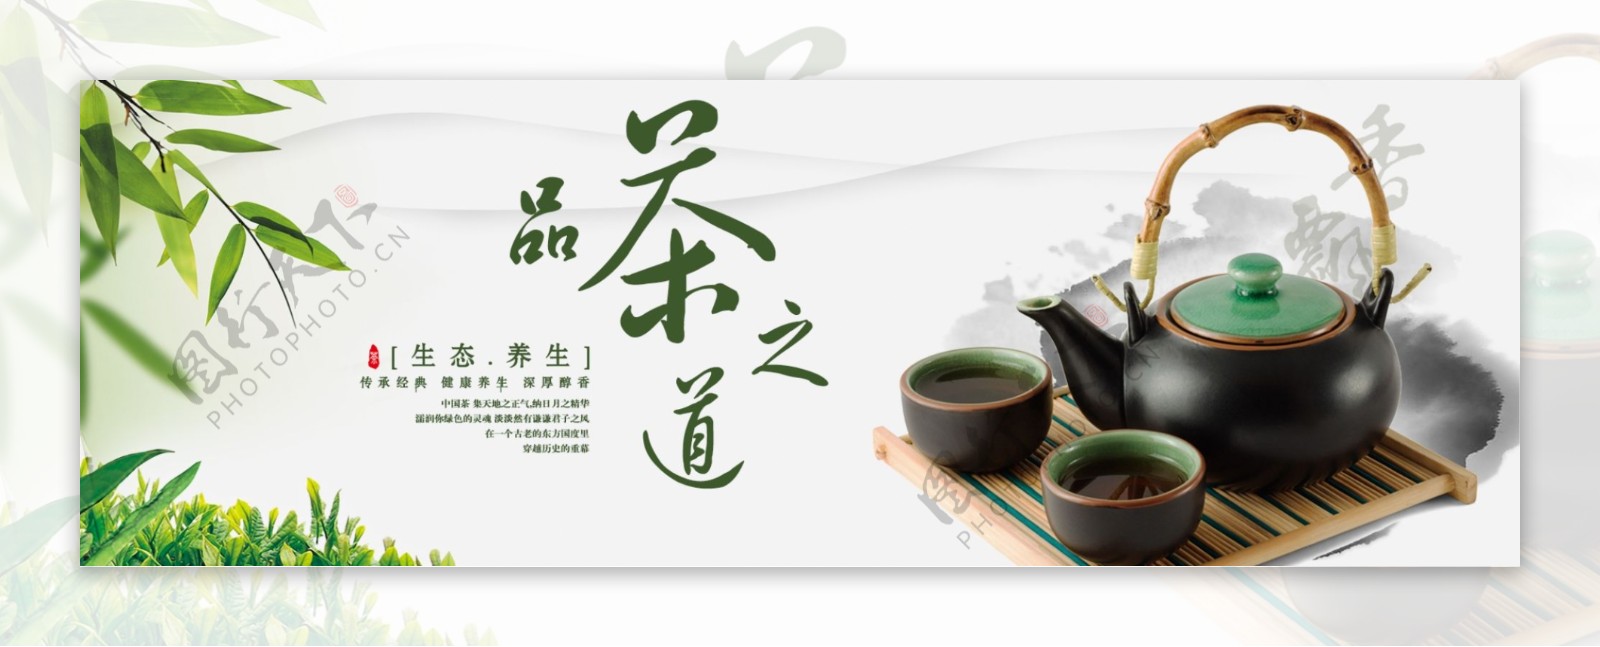 中国茶banner